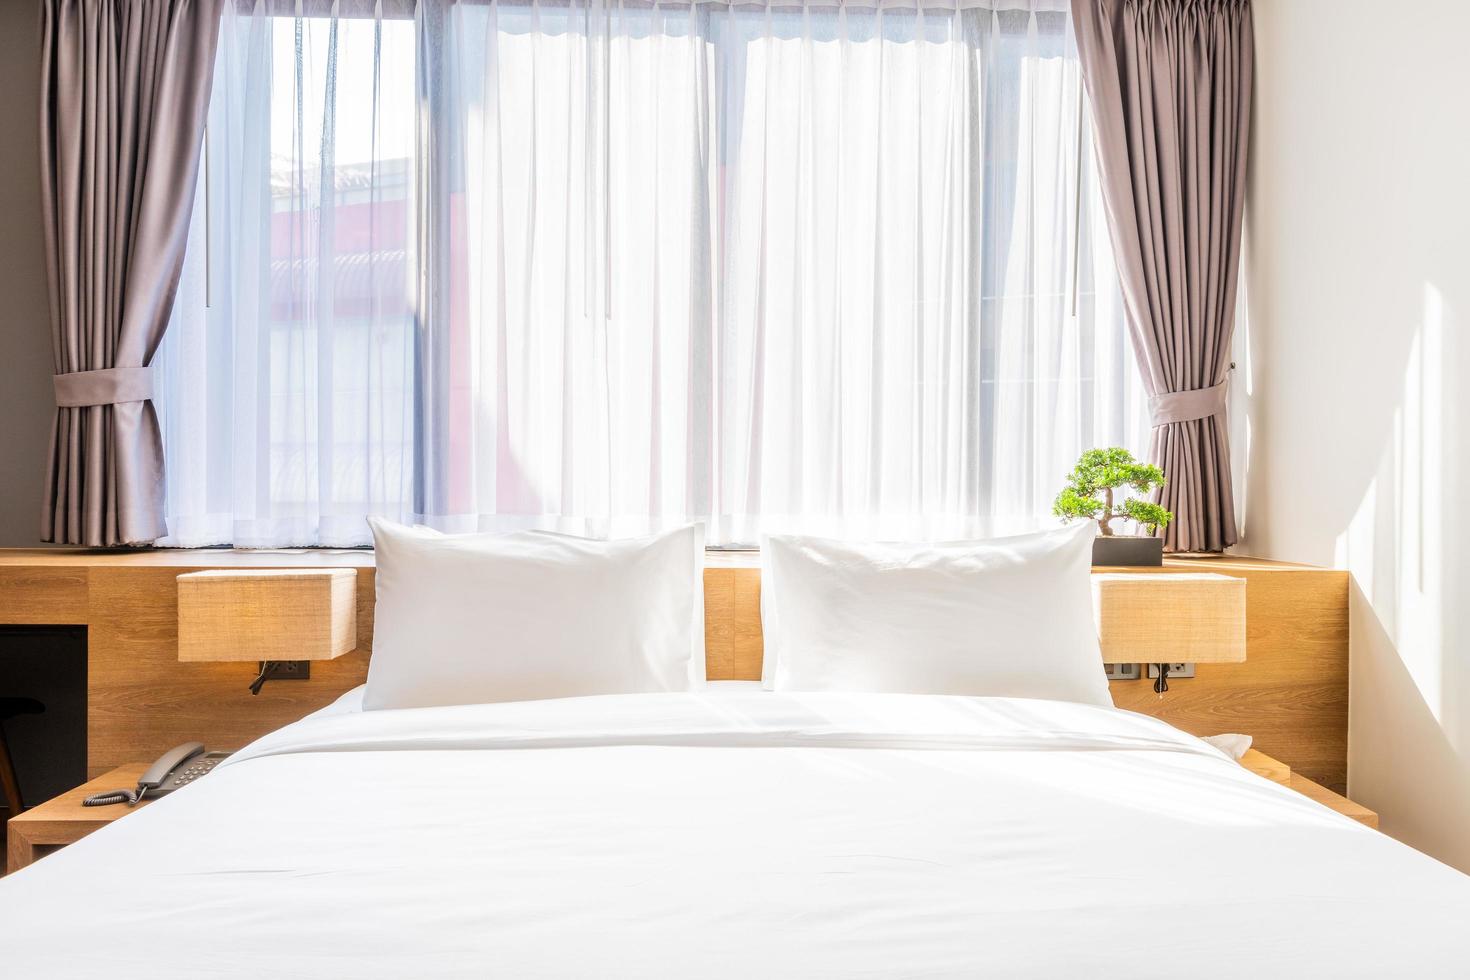 närbild av vit kudde på sängdekoration med ljus lampa och grönt träd i blomkrukor i hotellrumsinredning. foto